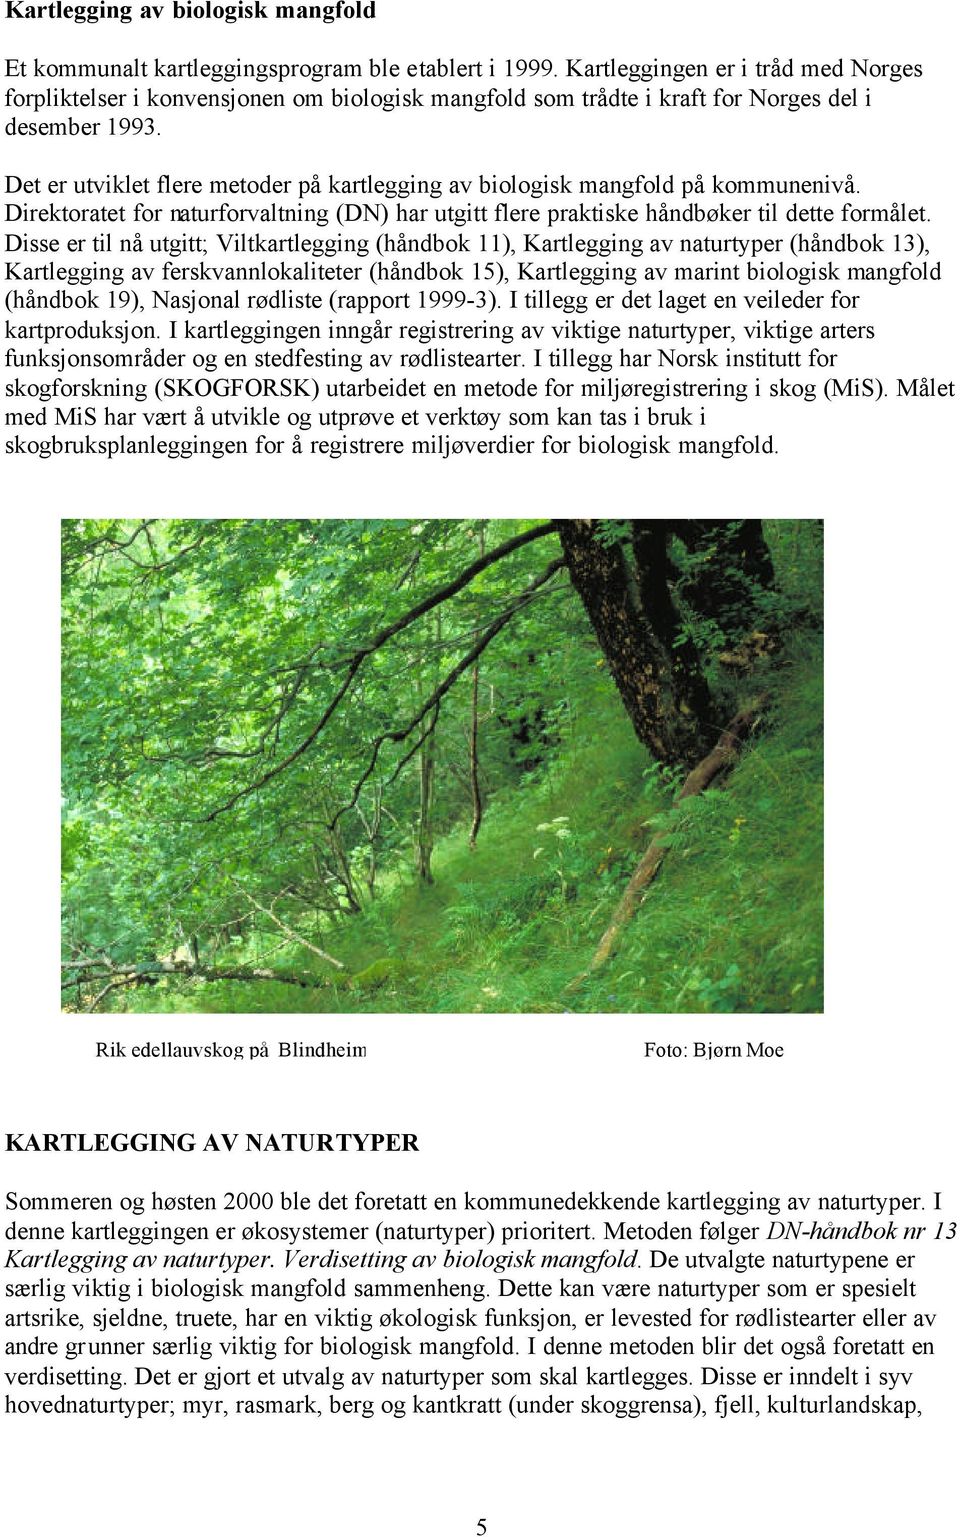 Det er utviklet flere metoder på kartlegging av biologisk mangfold på kommunenivå. Direktoratet for naturforvaltning (DN) har utgitt flere praktiske håndbøker til dette formålet.